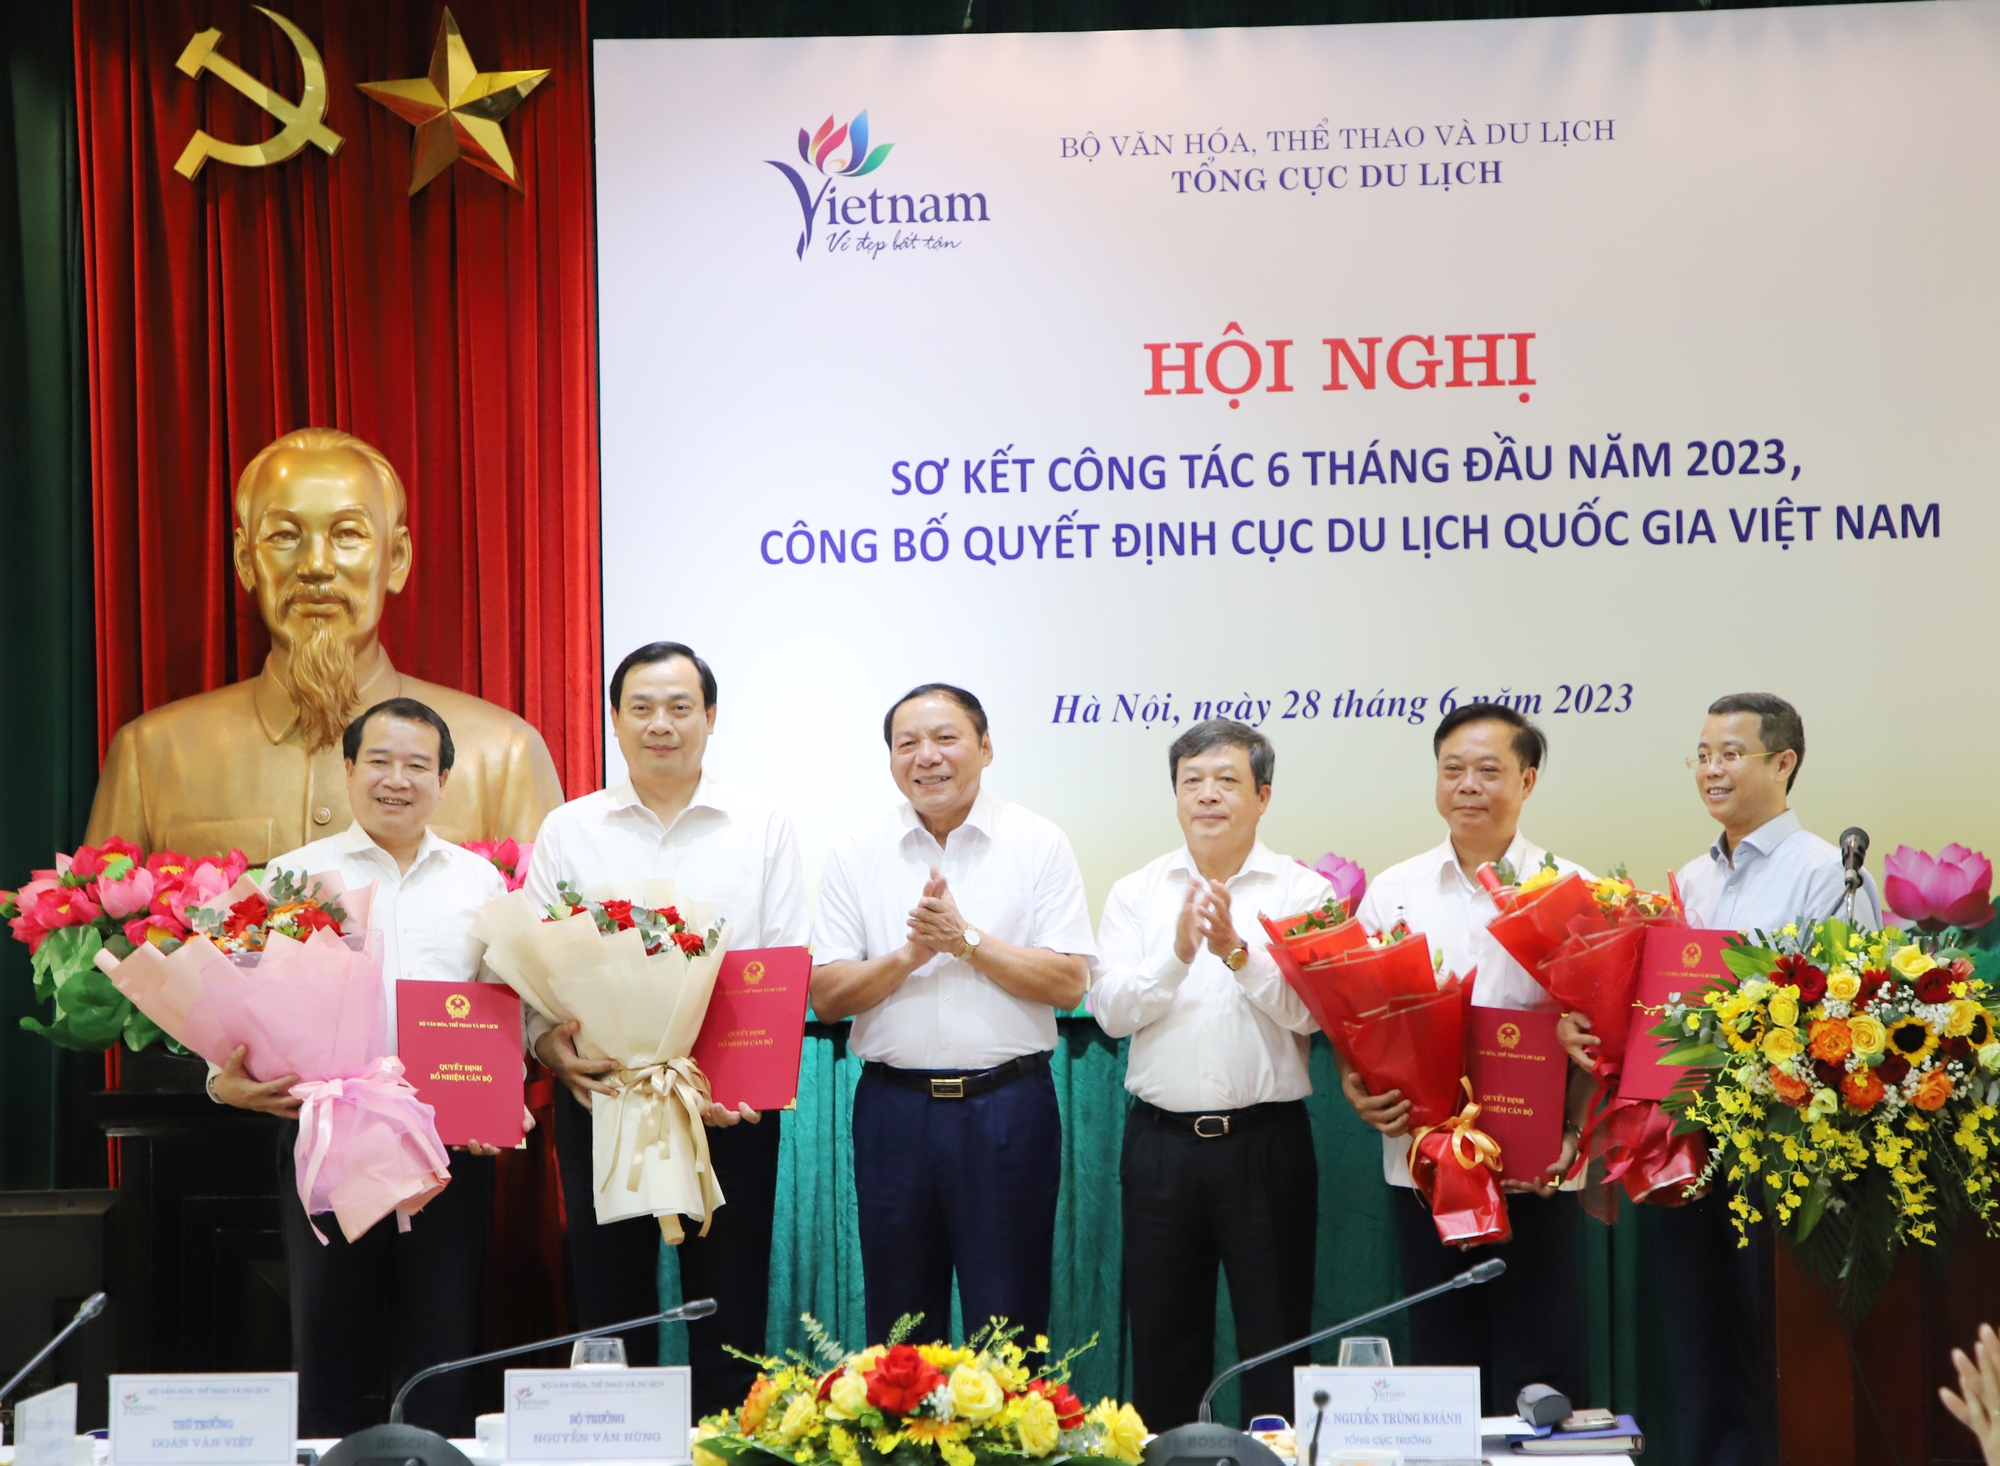 Bộ trưởng Nguyễn Văn Hùng: Ngành Du lịch phải có tư duy mới, cách tiếp cận mới - Ảnh 1.